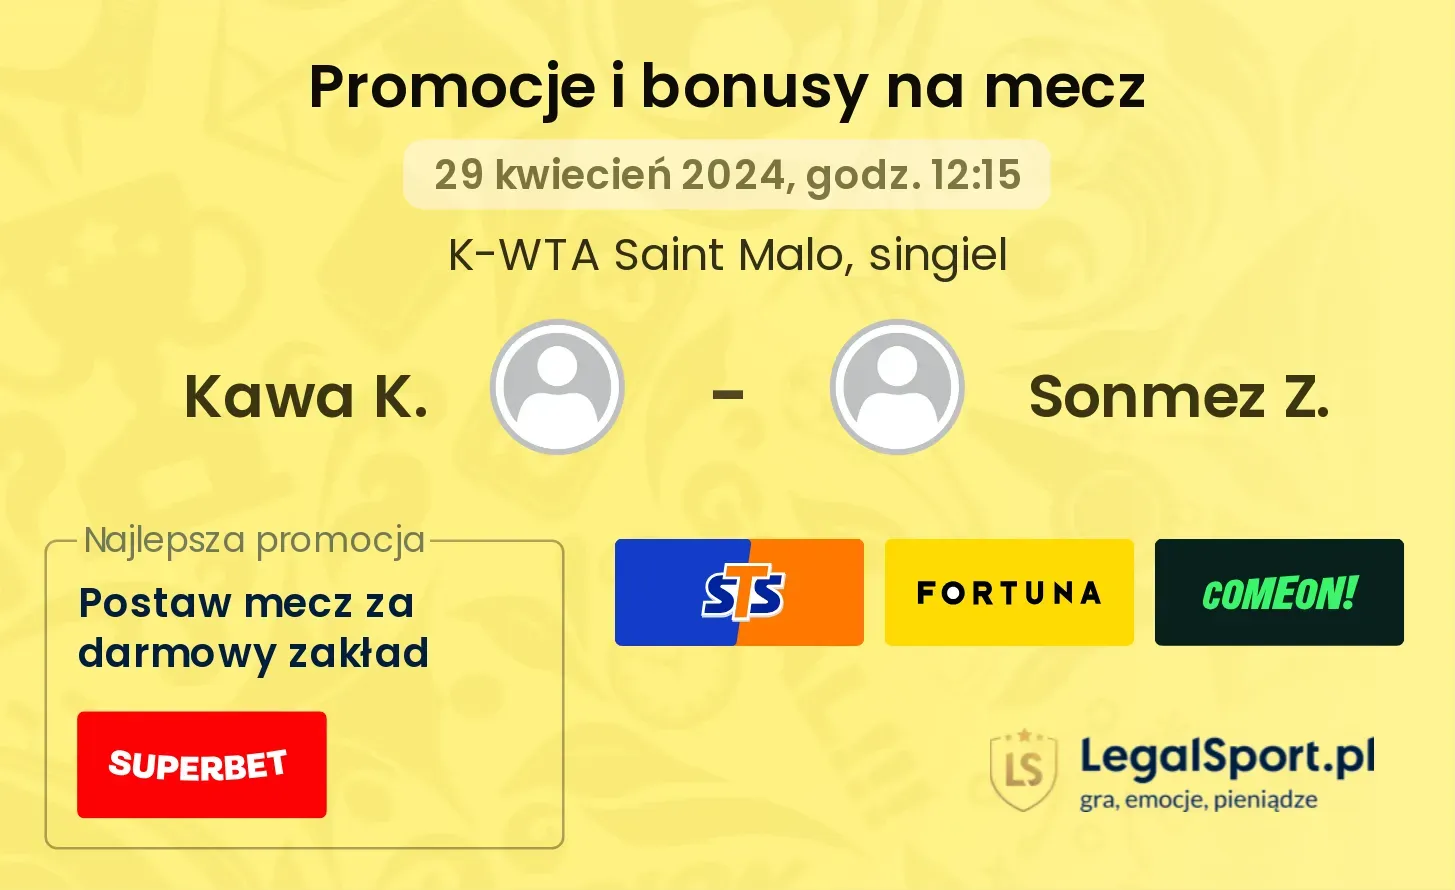 Kawa K. - Sonmez Z. promocje bonusy na mecz